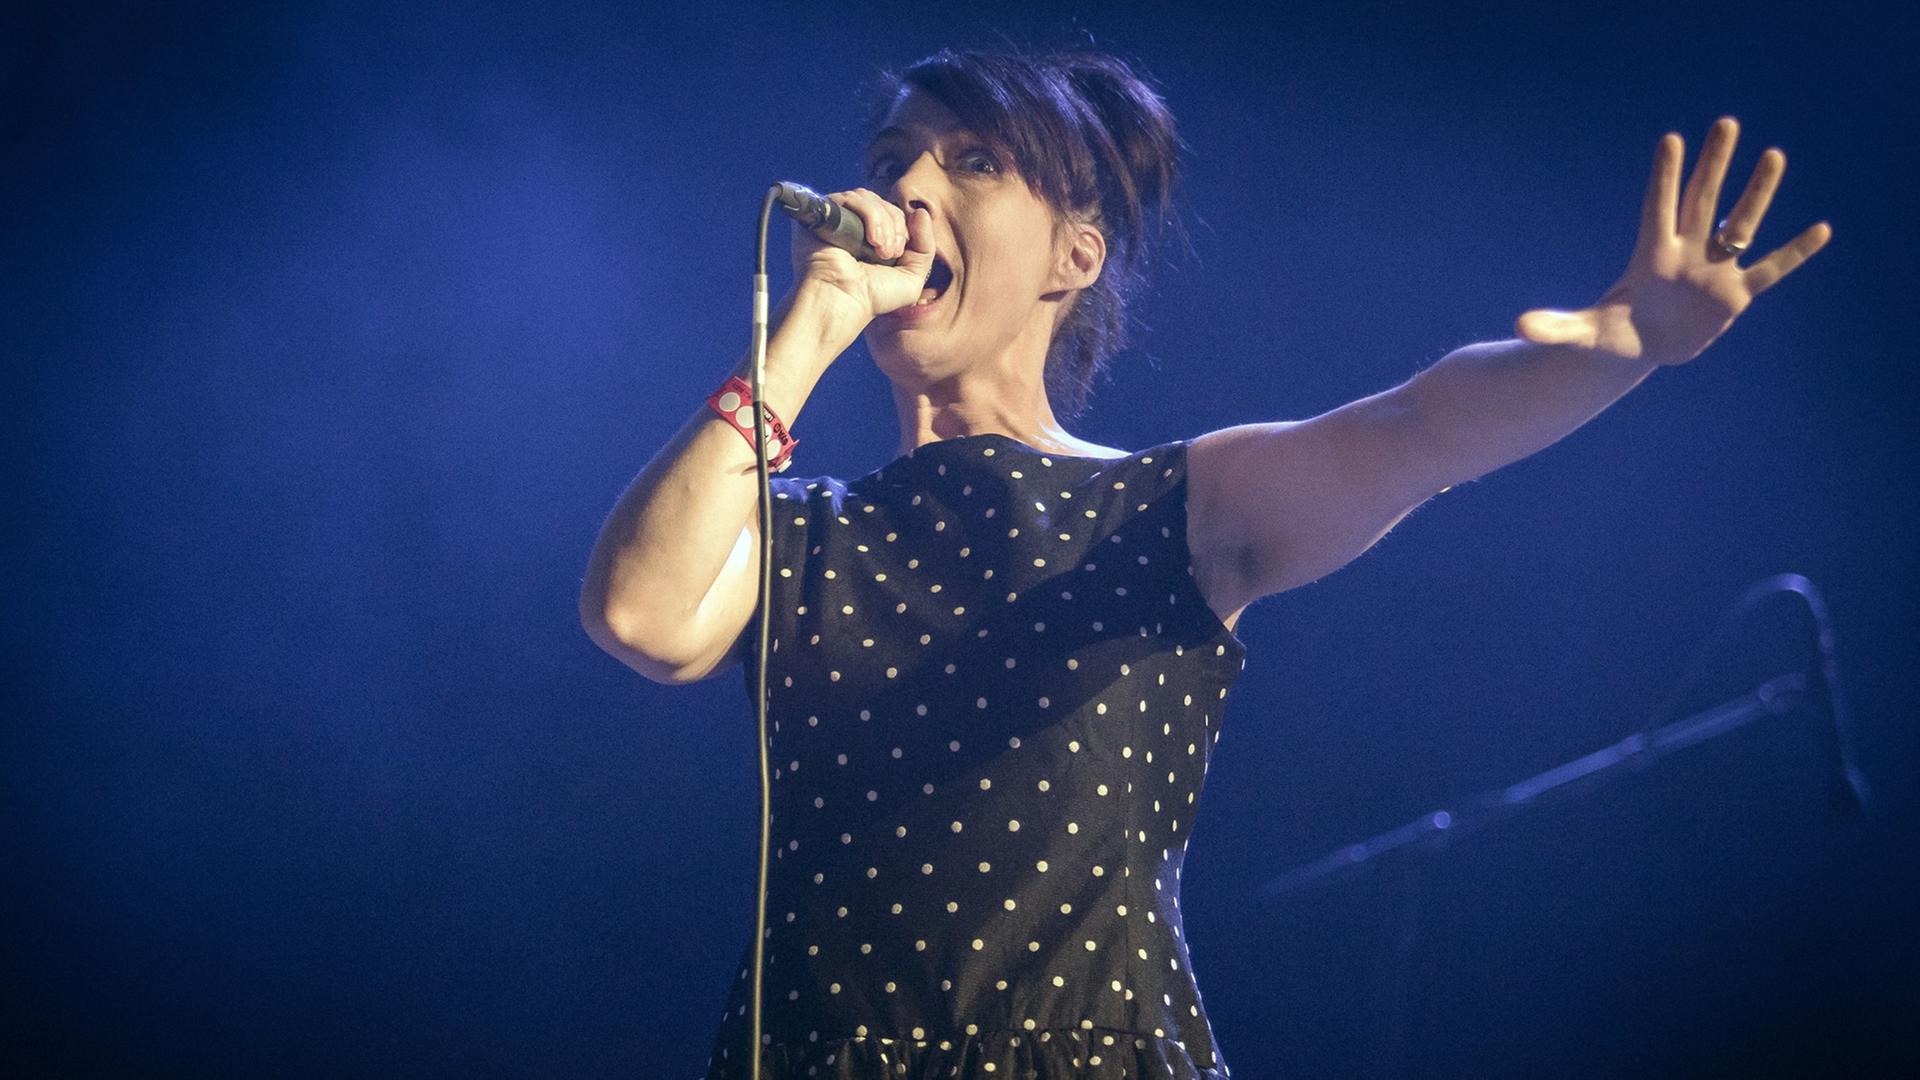 Sängerin Kathleen Hanna bei einem Auftritt ihrer Band The Julie Ruin beim Øyafestivalen 2015 in Oslo.